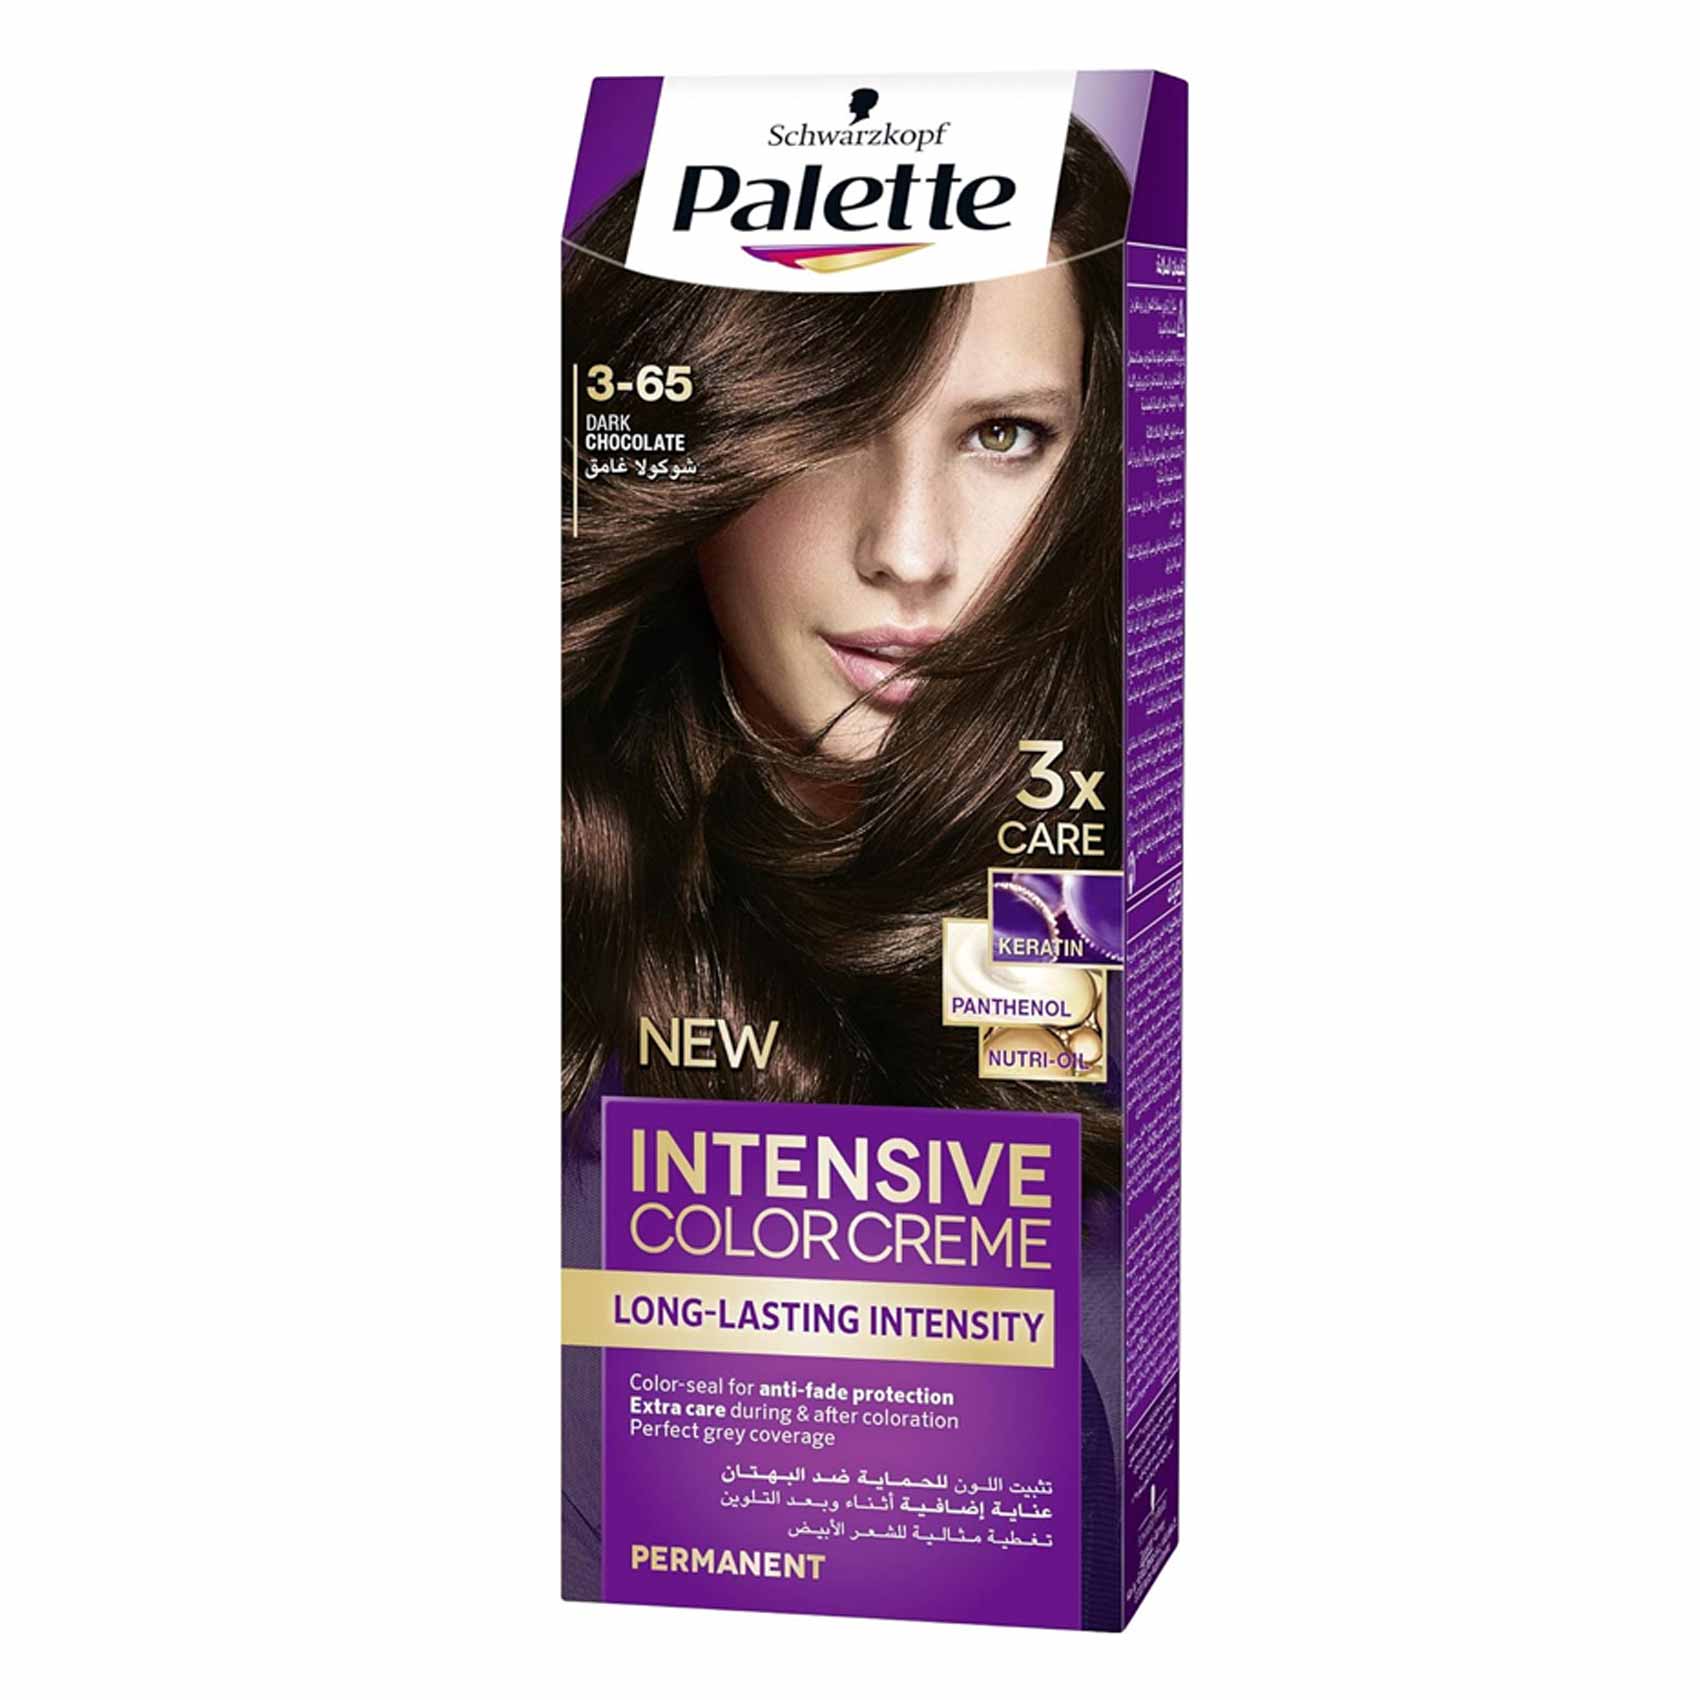 Schwarzkopf Palette Permanent Intensive Hair Color Cream 3-65 Dark Chocolate 50ml